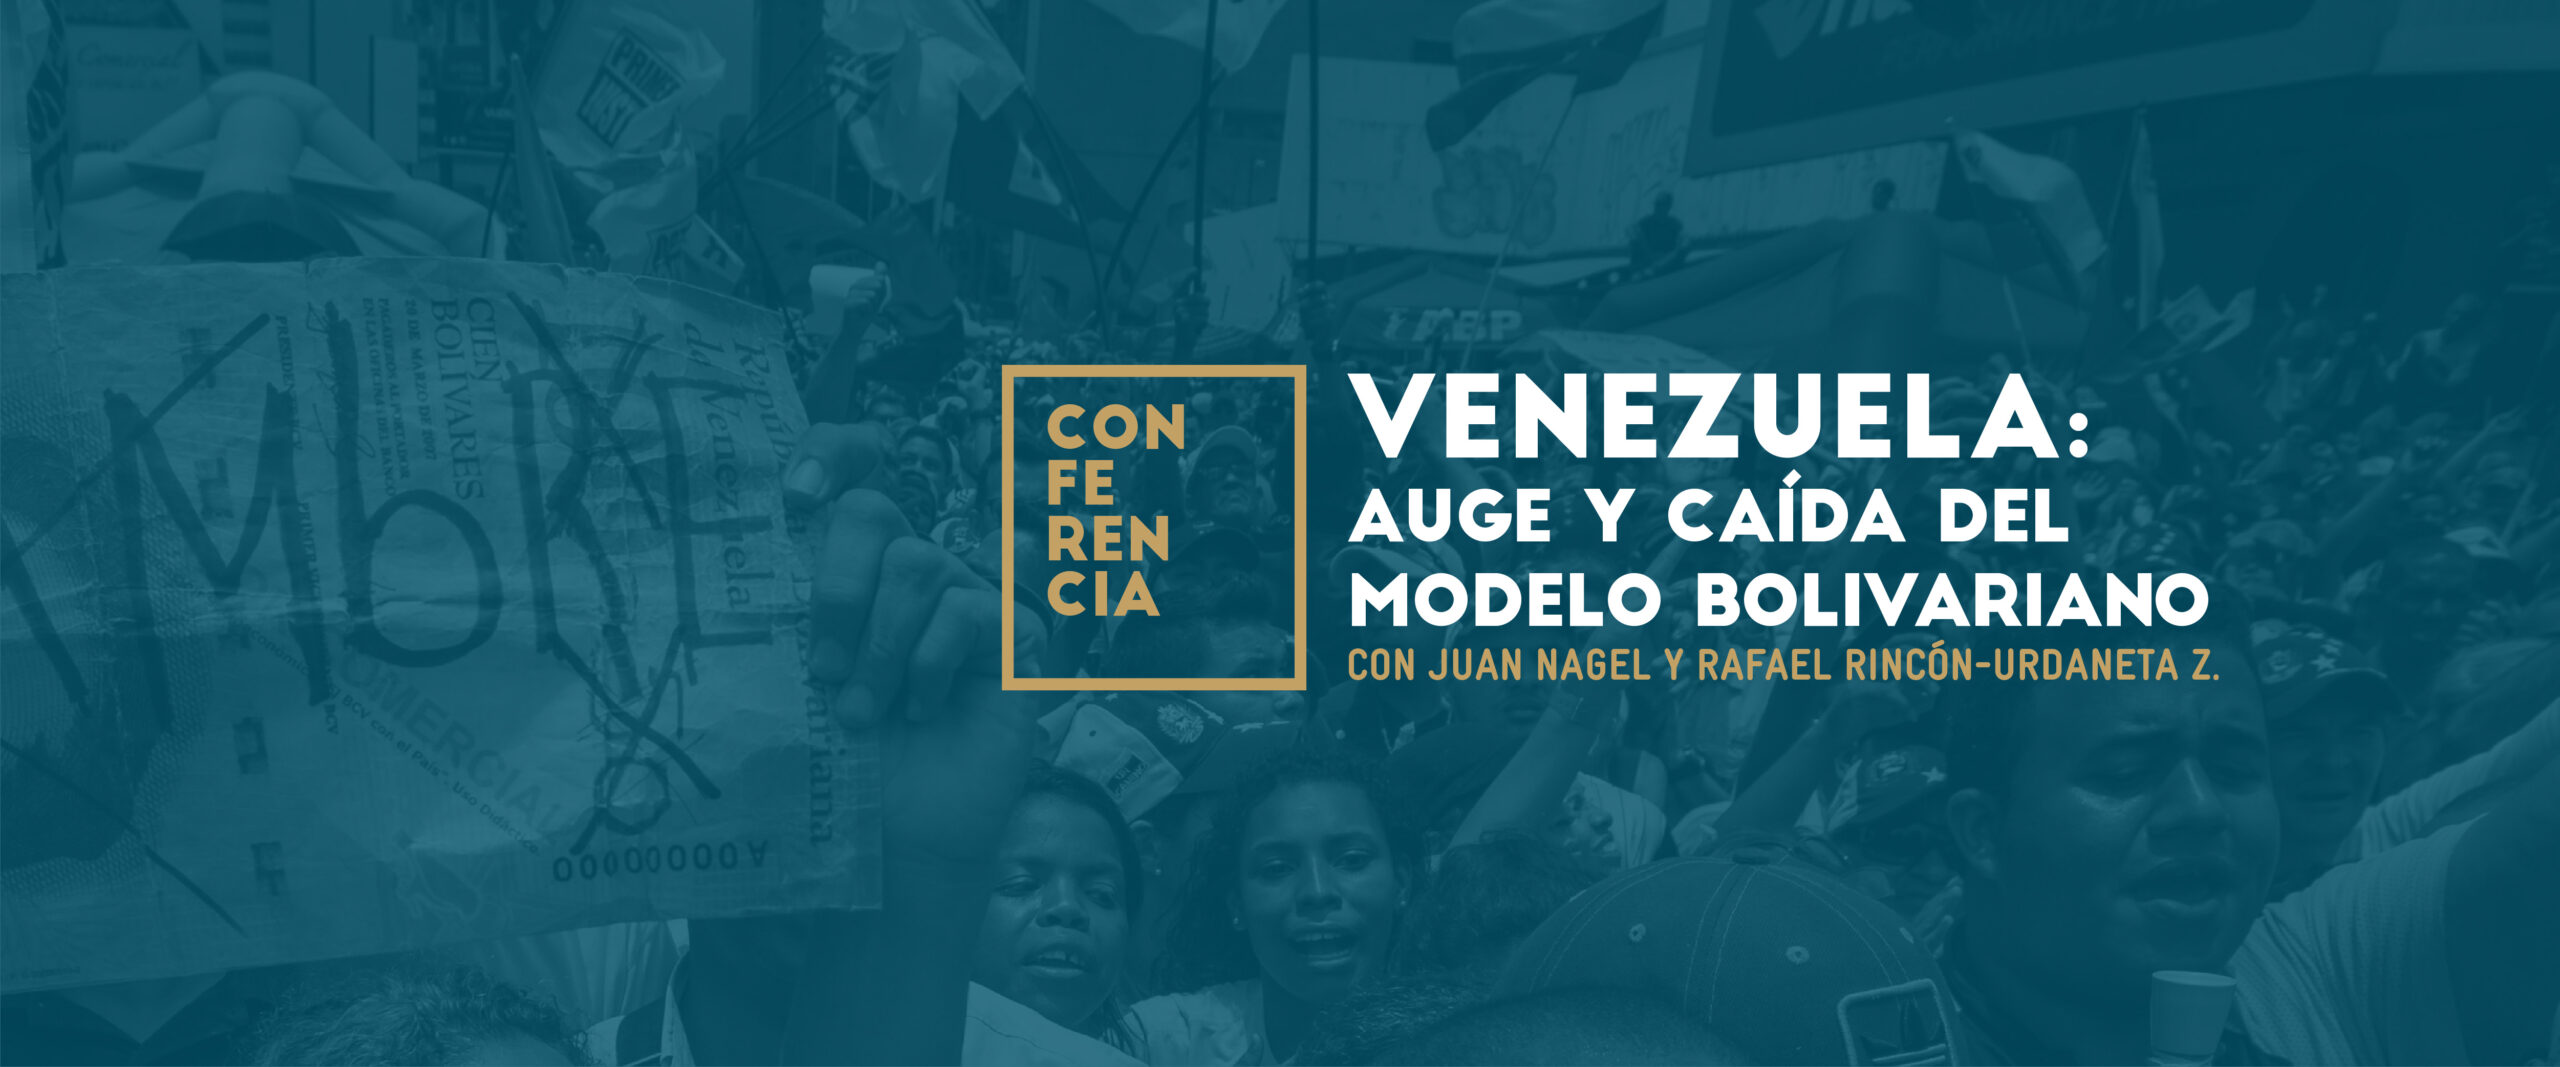 Conferencia: Venezuela, auge y caída del modelo bolivariano